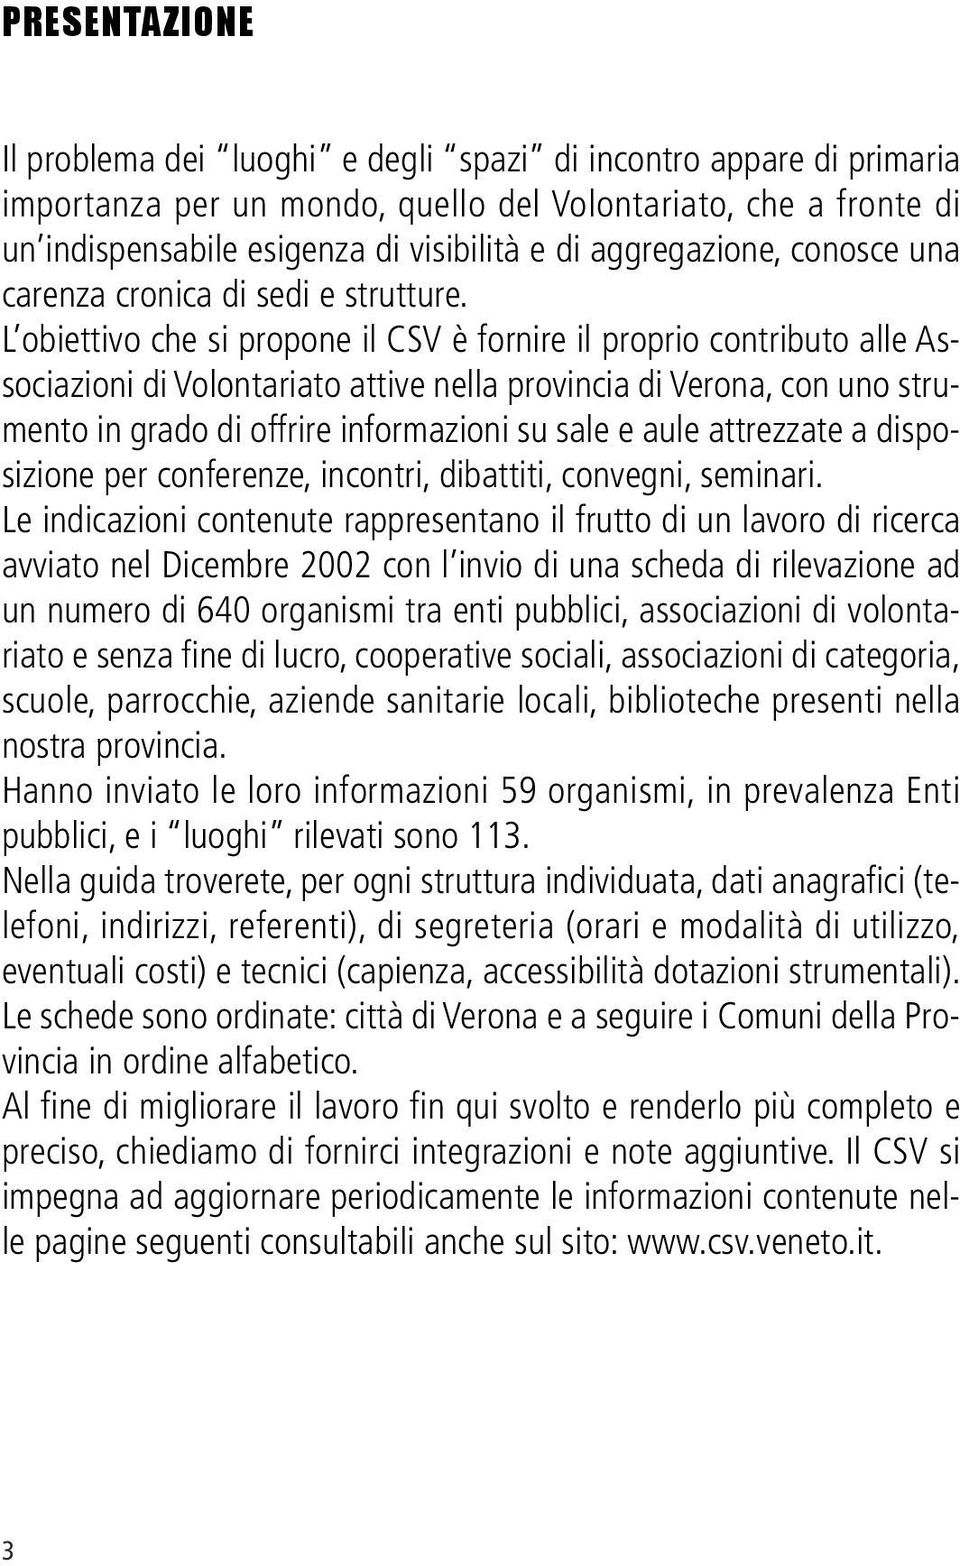 L obiettivo che si propone il CSV è fornire il proprio contributo alle Associazioni di Volontariato attive nella provincia di Verona, con uno strumento in grado di offrire informazioni su sale e aule